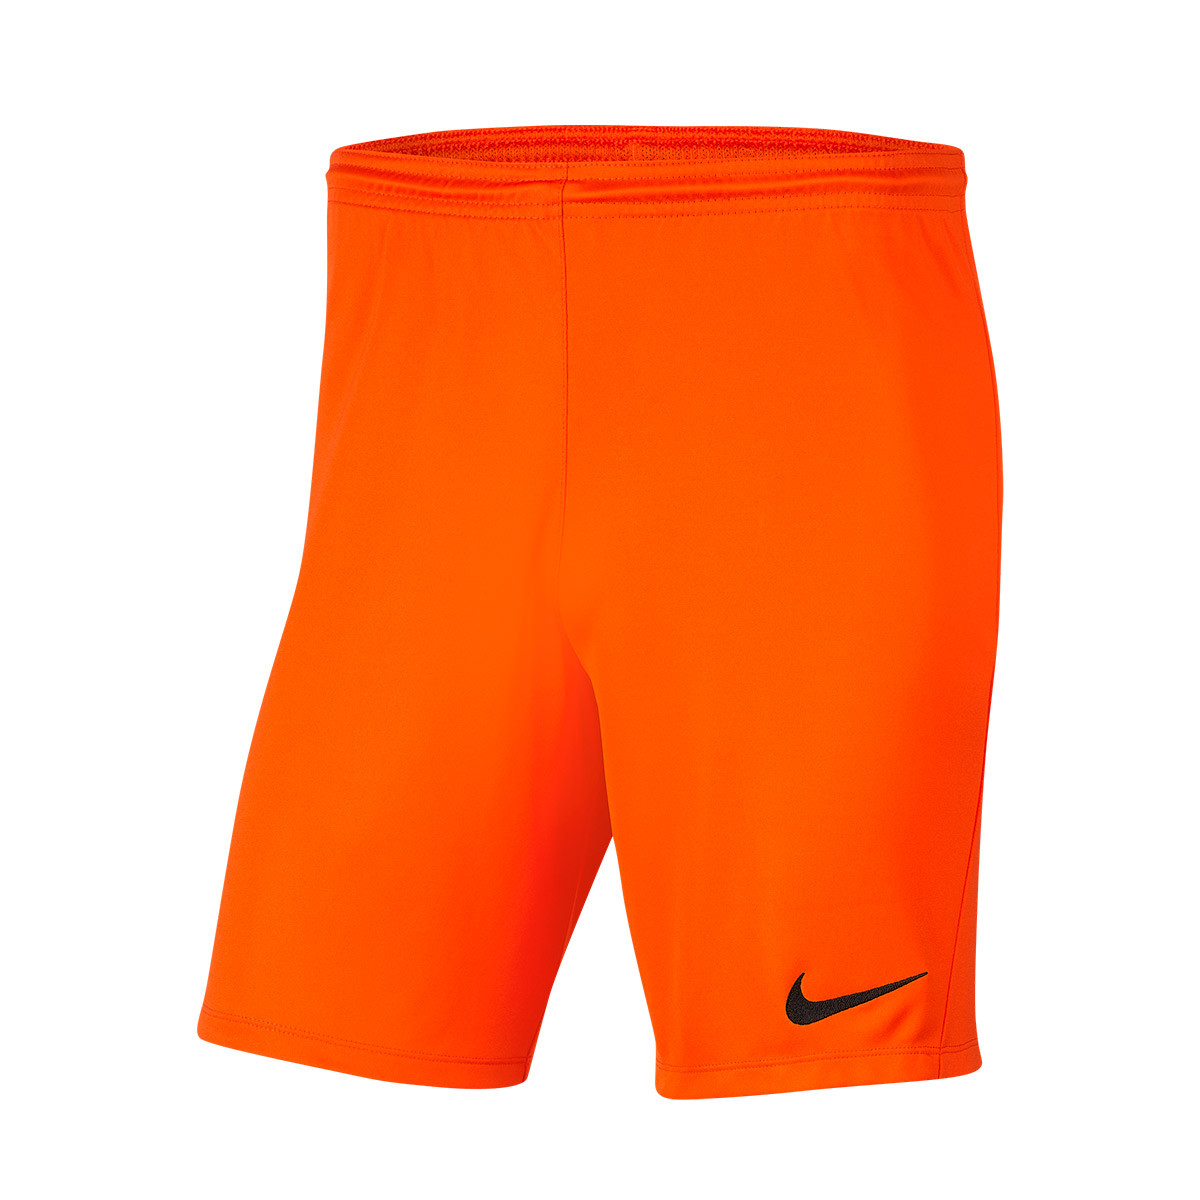 Shorts Nike Park III Knit Safety orange 